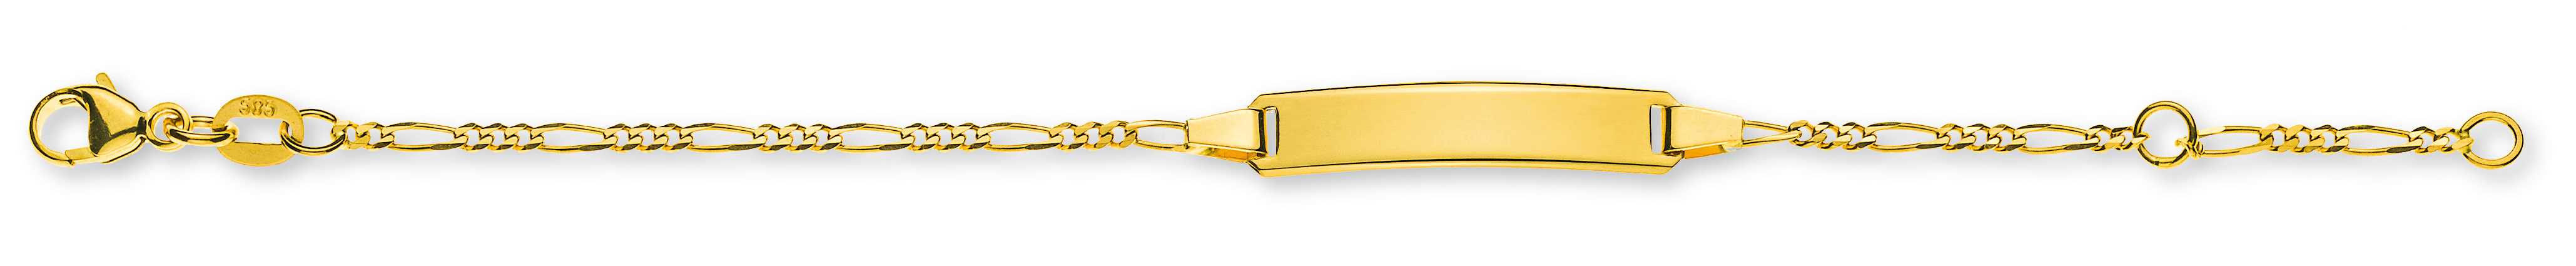 AURONOS Élégance ID-Bracelet or jaune 14k chaîne figaro 18cm